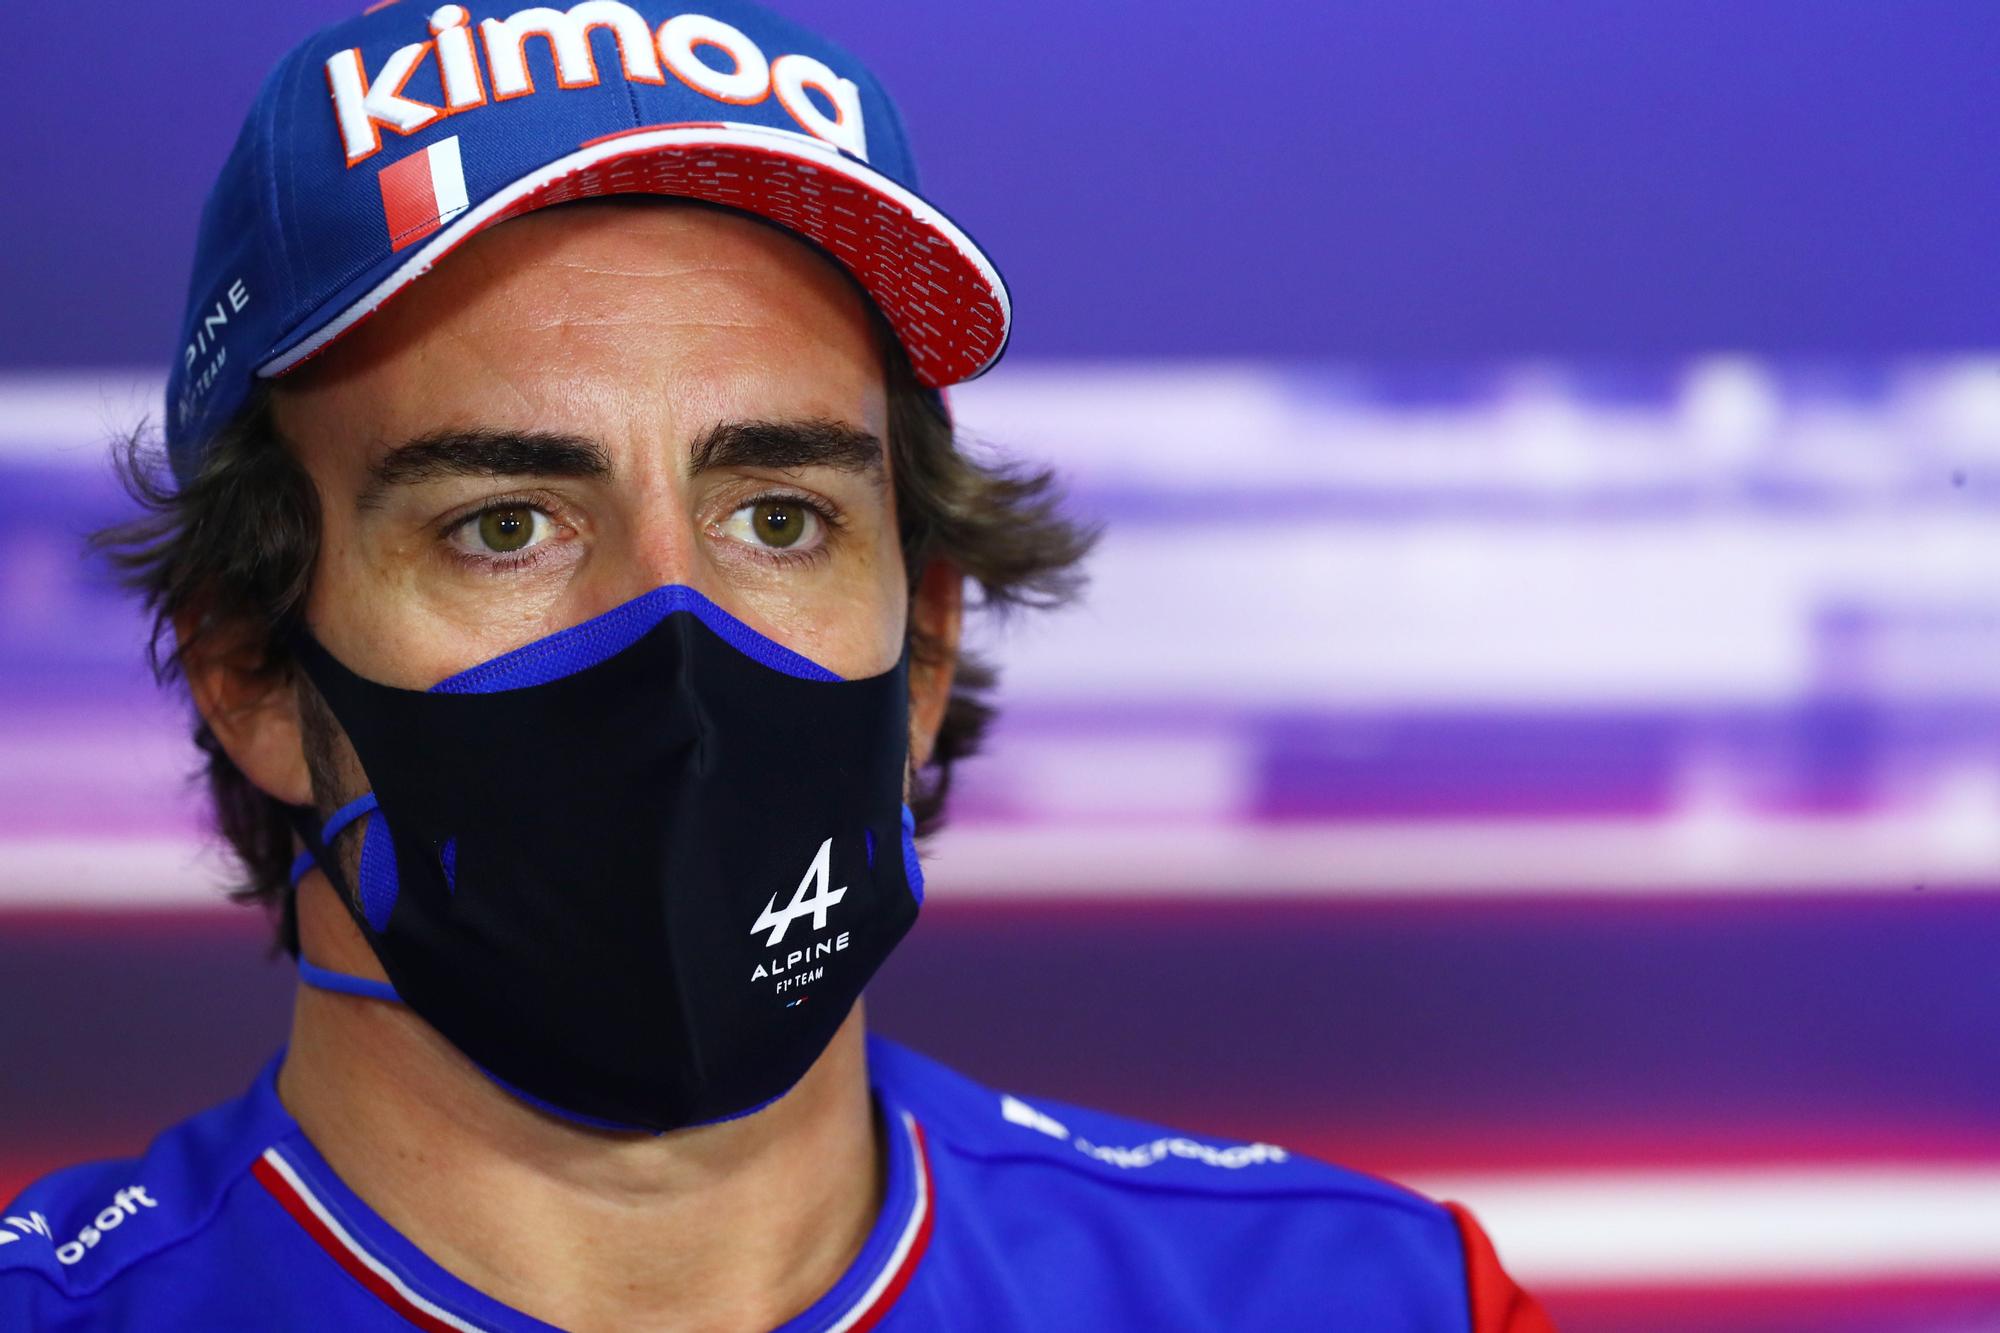 Alonso, en el encuentro informativo previo al Gran Premio de Bahrein.